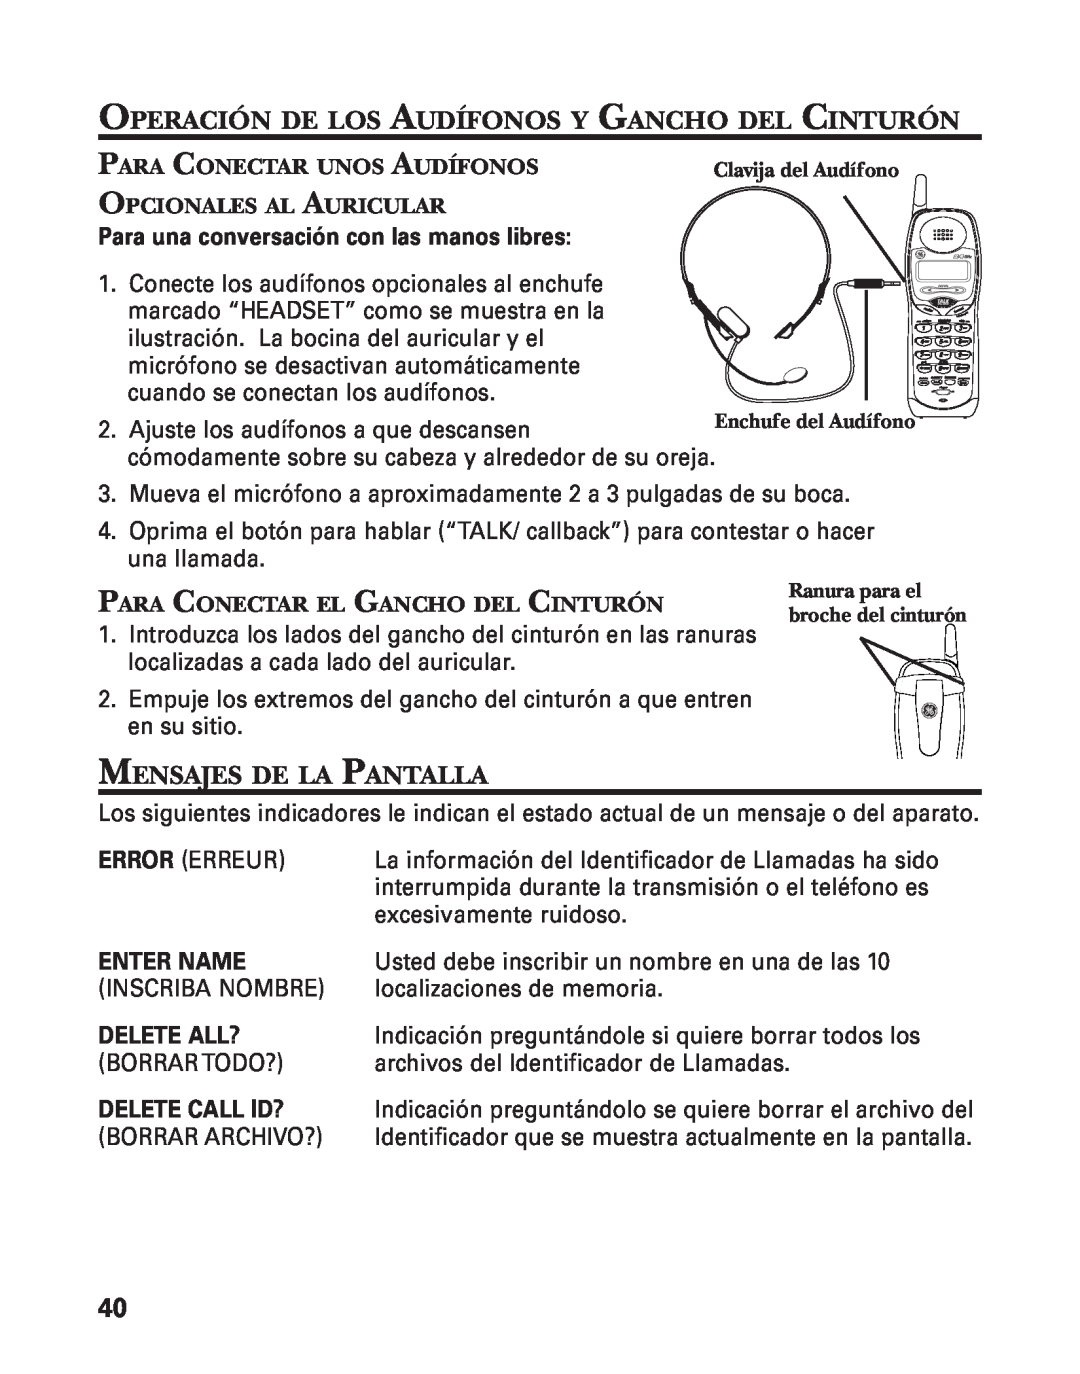 GE 55909320 manual Operación De Los Audífonos Y Gancho Del Cinturón, Mensajes De La Pantalla, Enter Name, Delete All? 